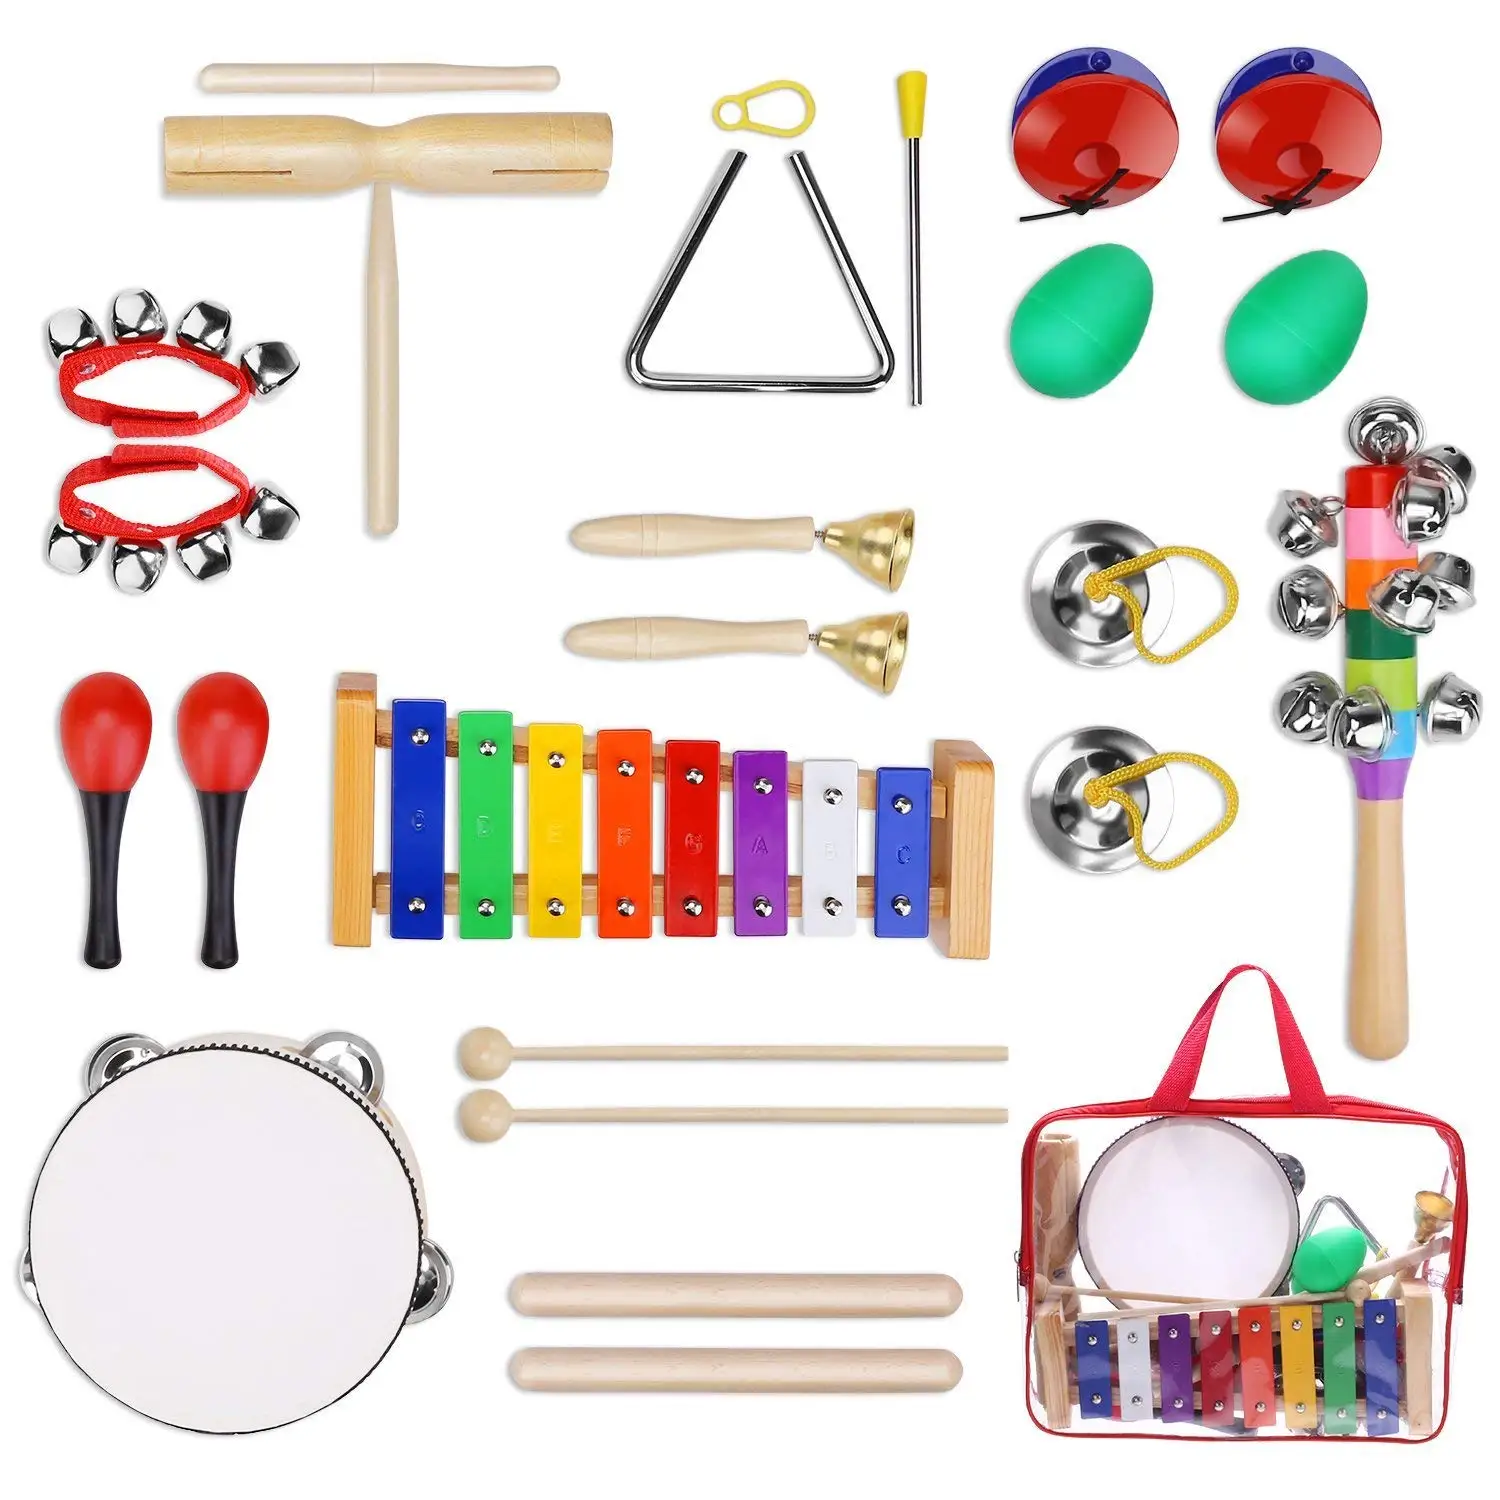 Обучающие музыкальные инструменты. Детские музыкальные инструменты. Набор музыкальных инструментов для детей. Набор музыкальных инструментов для детского сада. Игрушечные музыкальные инструменты.